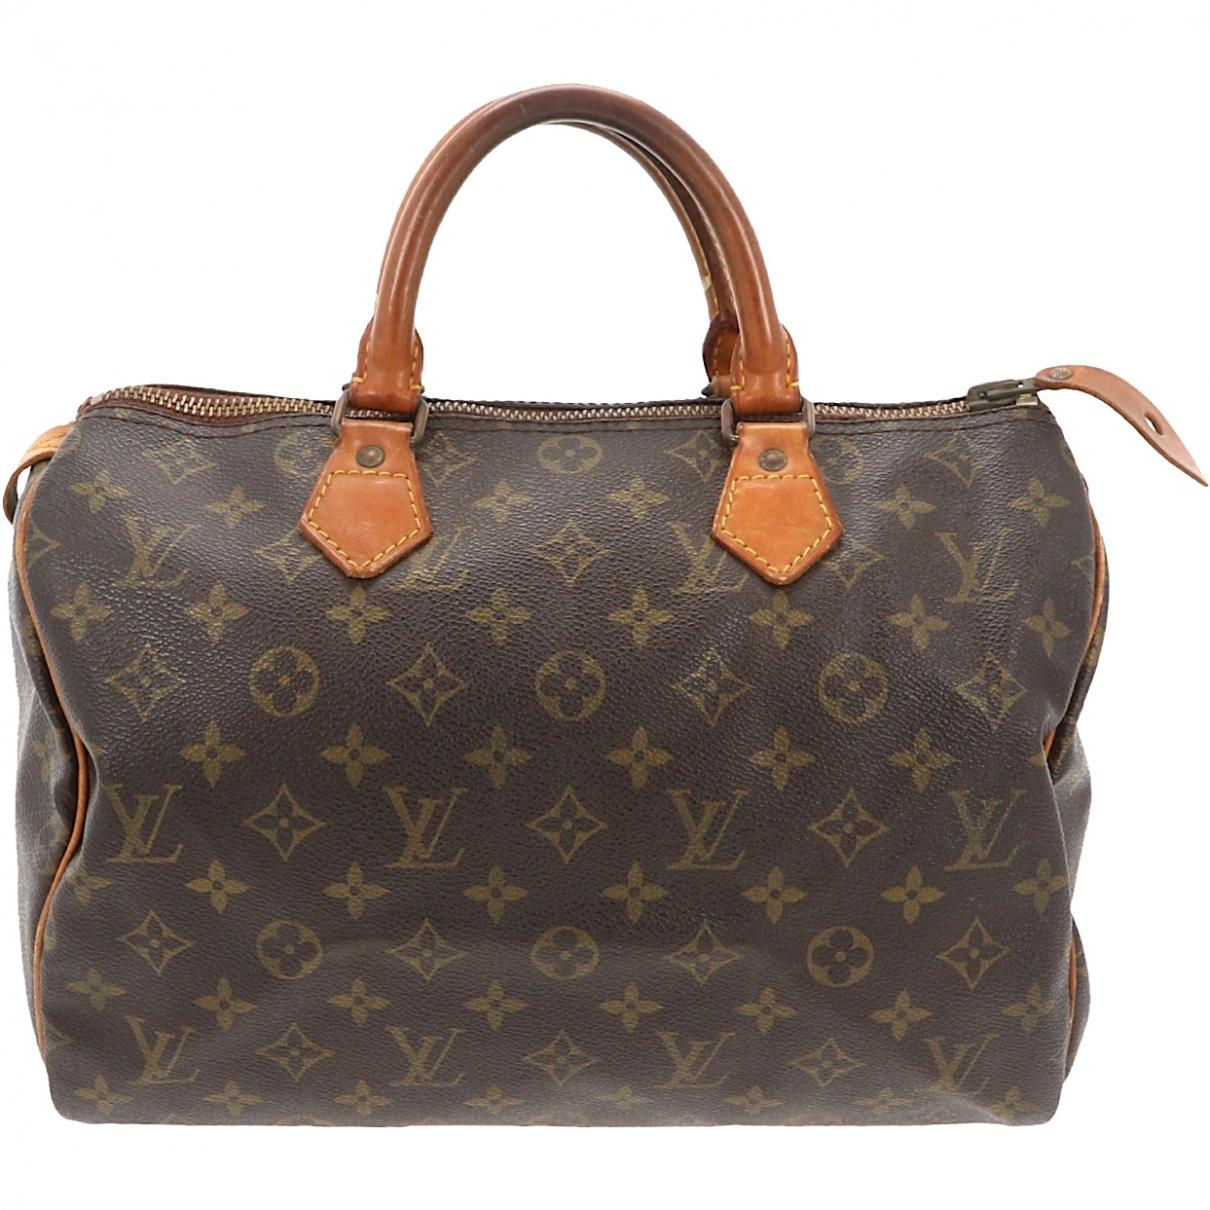 Lyst - Louis Vuitton Speedy Brown Leather Handbag in Brown - Save 25%